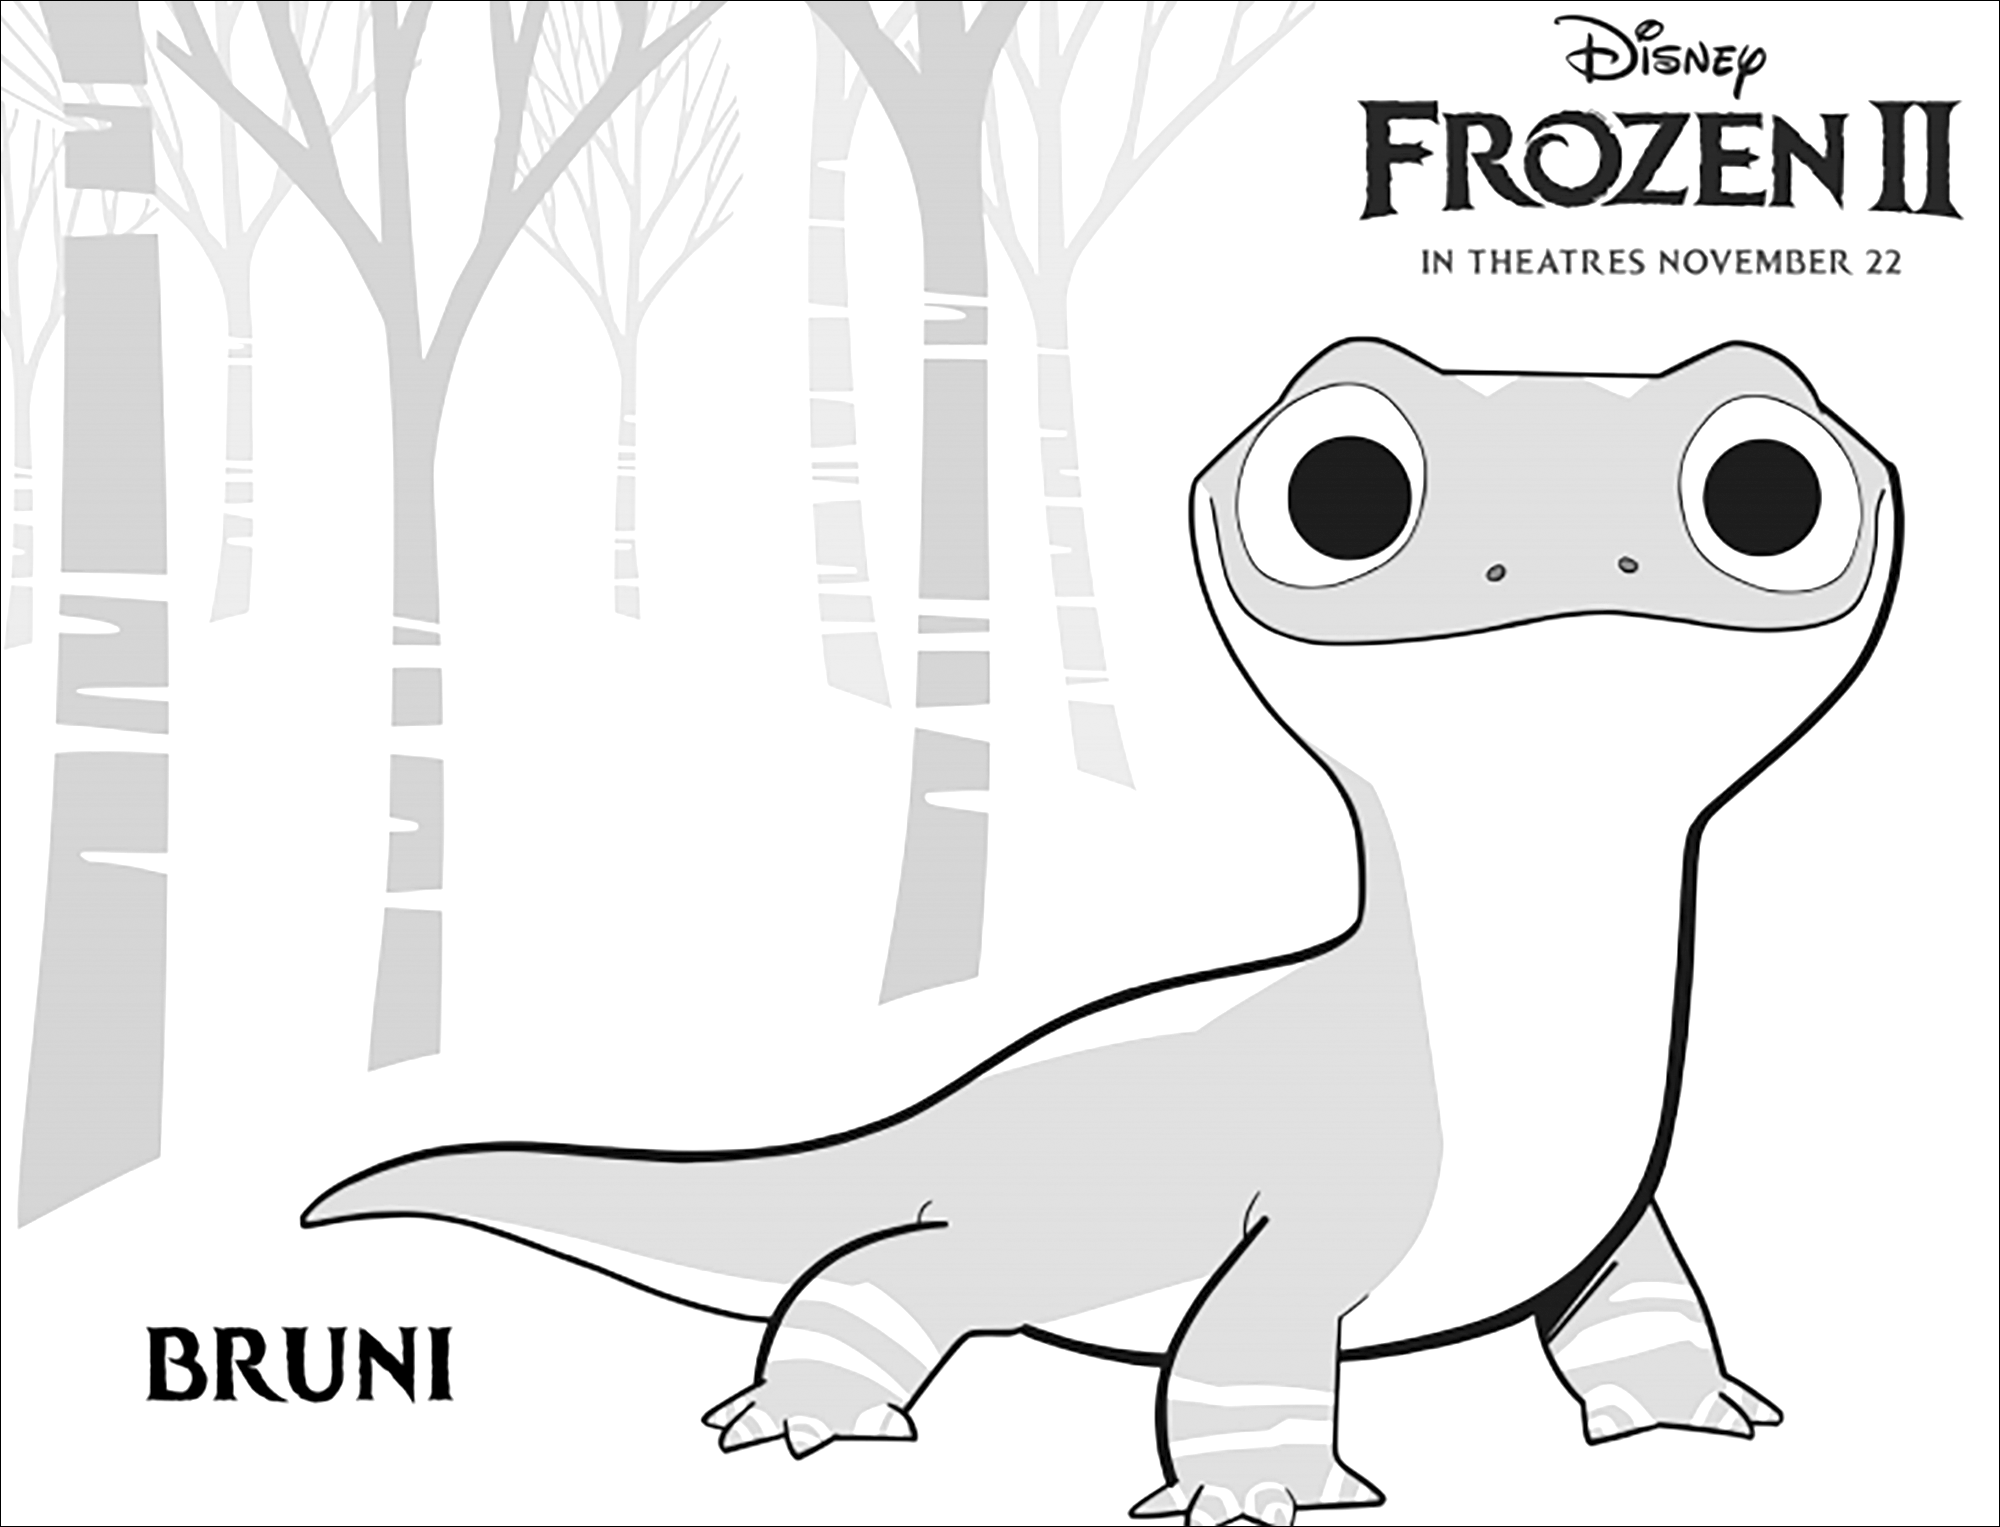 La extraña Bruni, una nueva criatura descubierta en Frozen 2 (Disney) : (versión con texto)